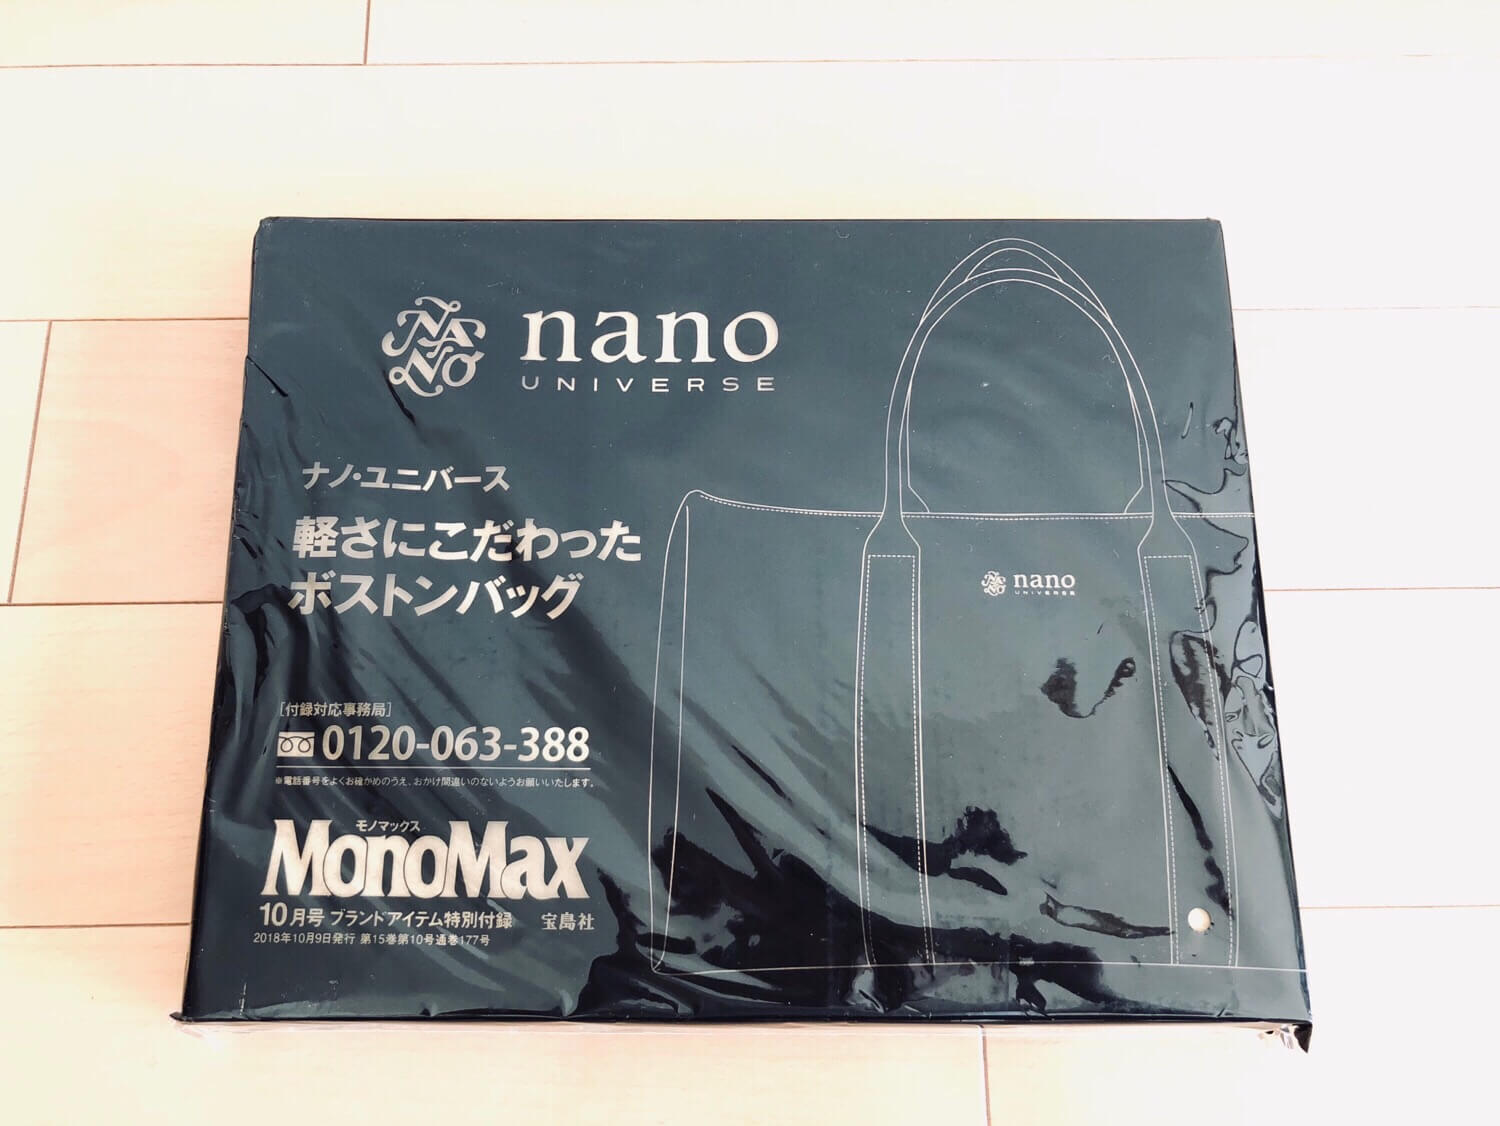 Mono Max付録 nano universeボストンバッグの開封レビュー 付録の外観